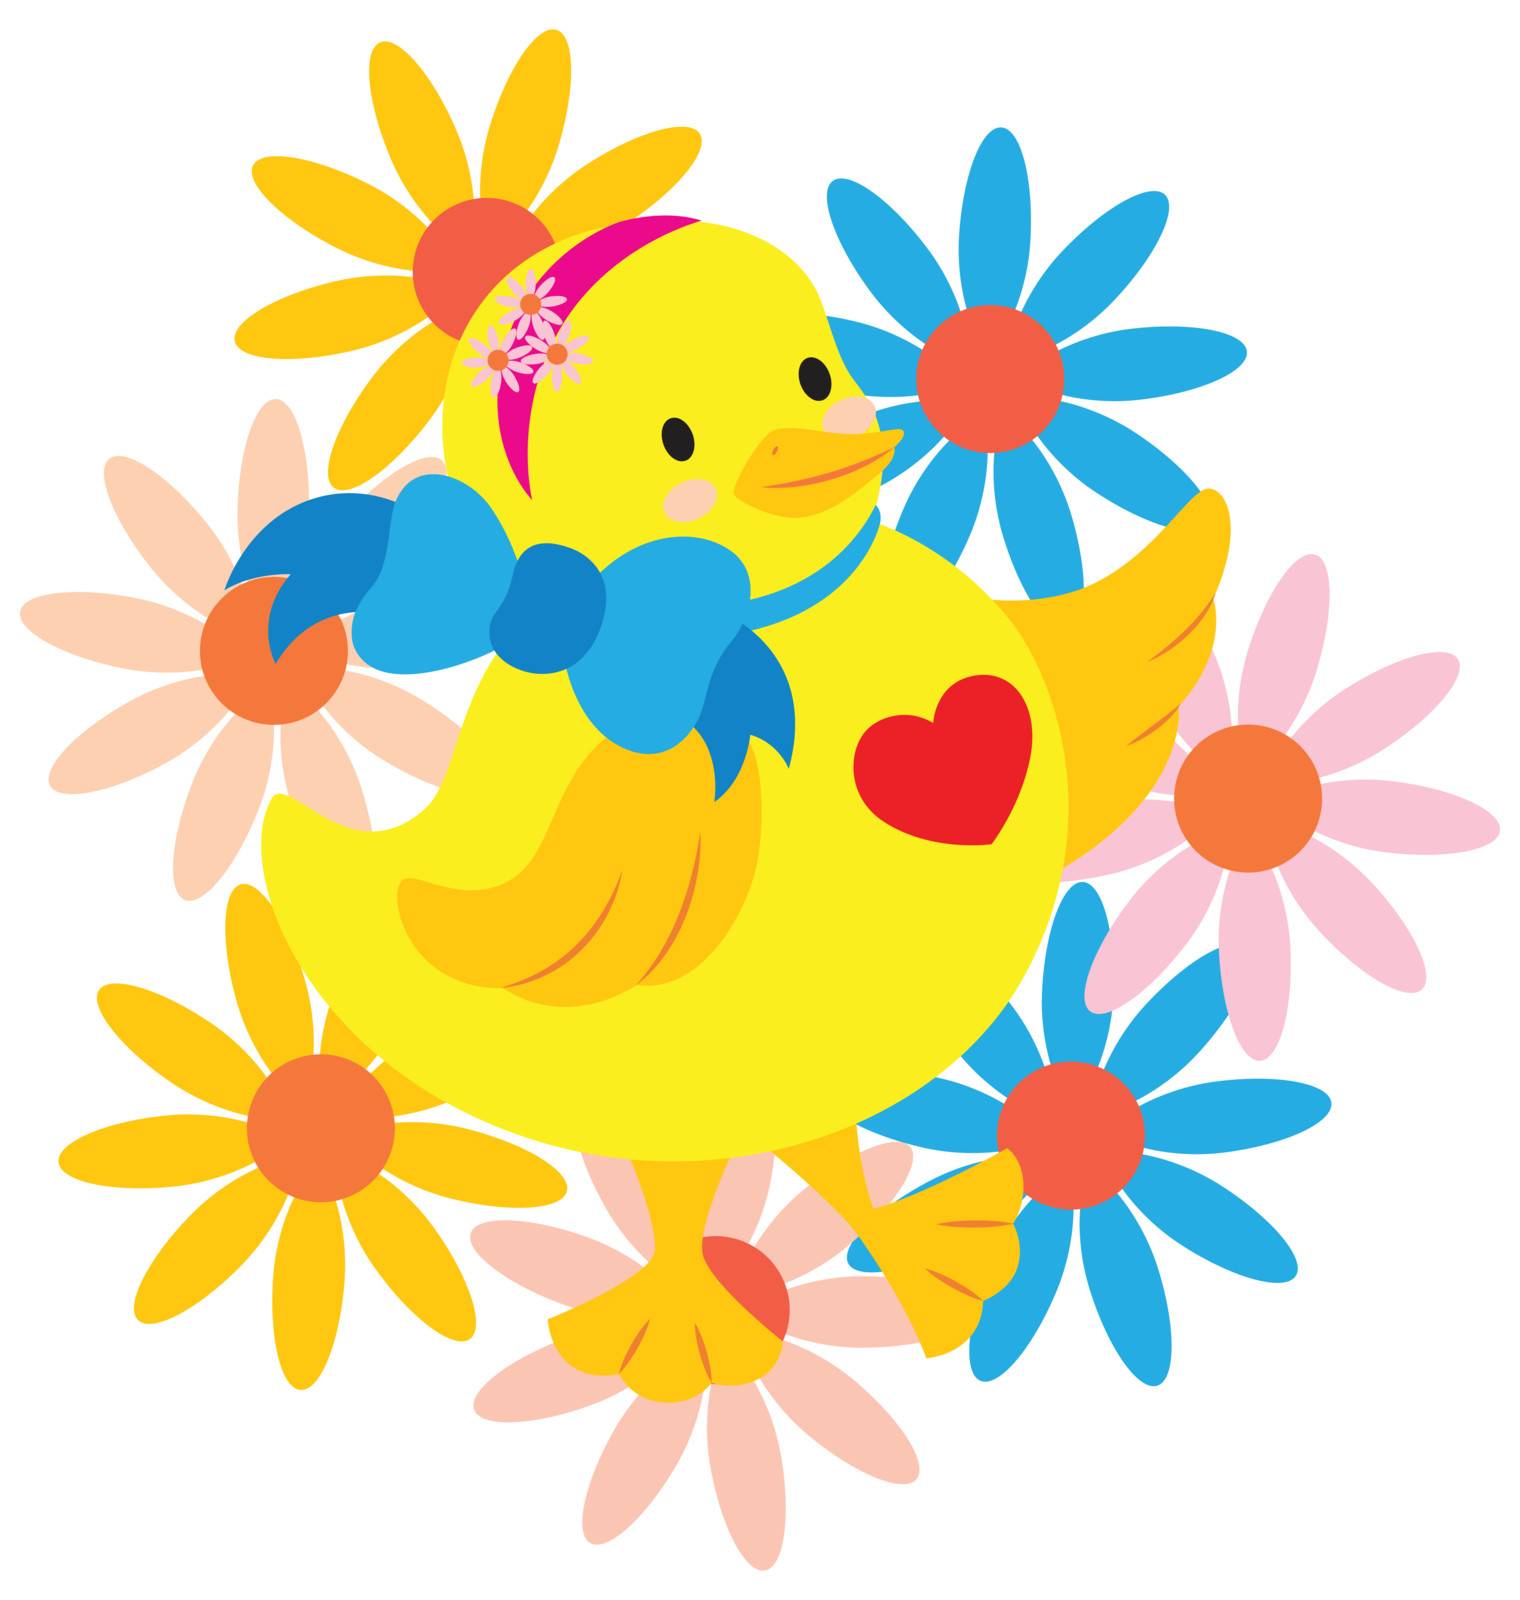 Happy Chick by zhou77